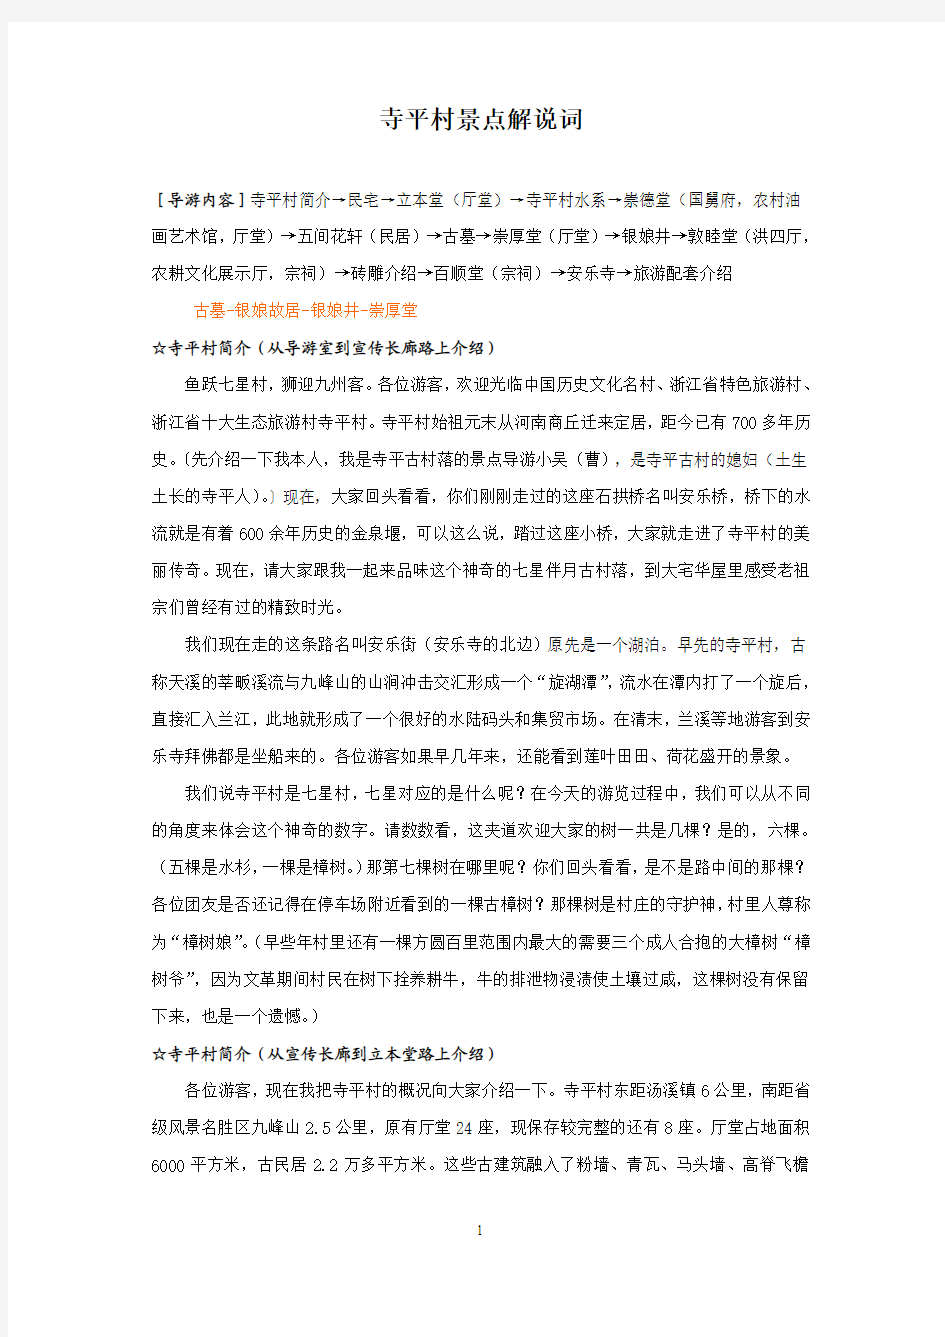 寺平村景点解说词,刘2013年1月18日定稿